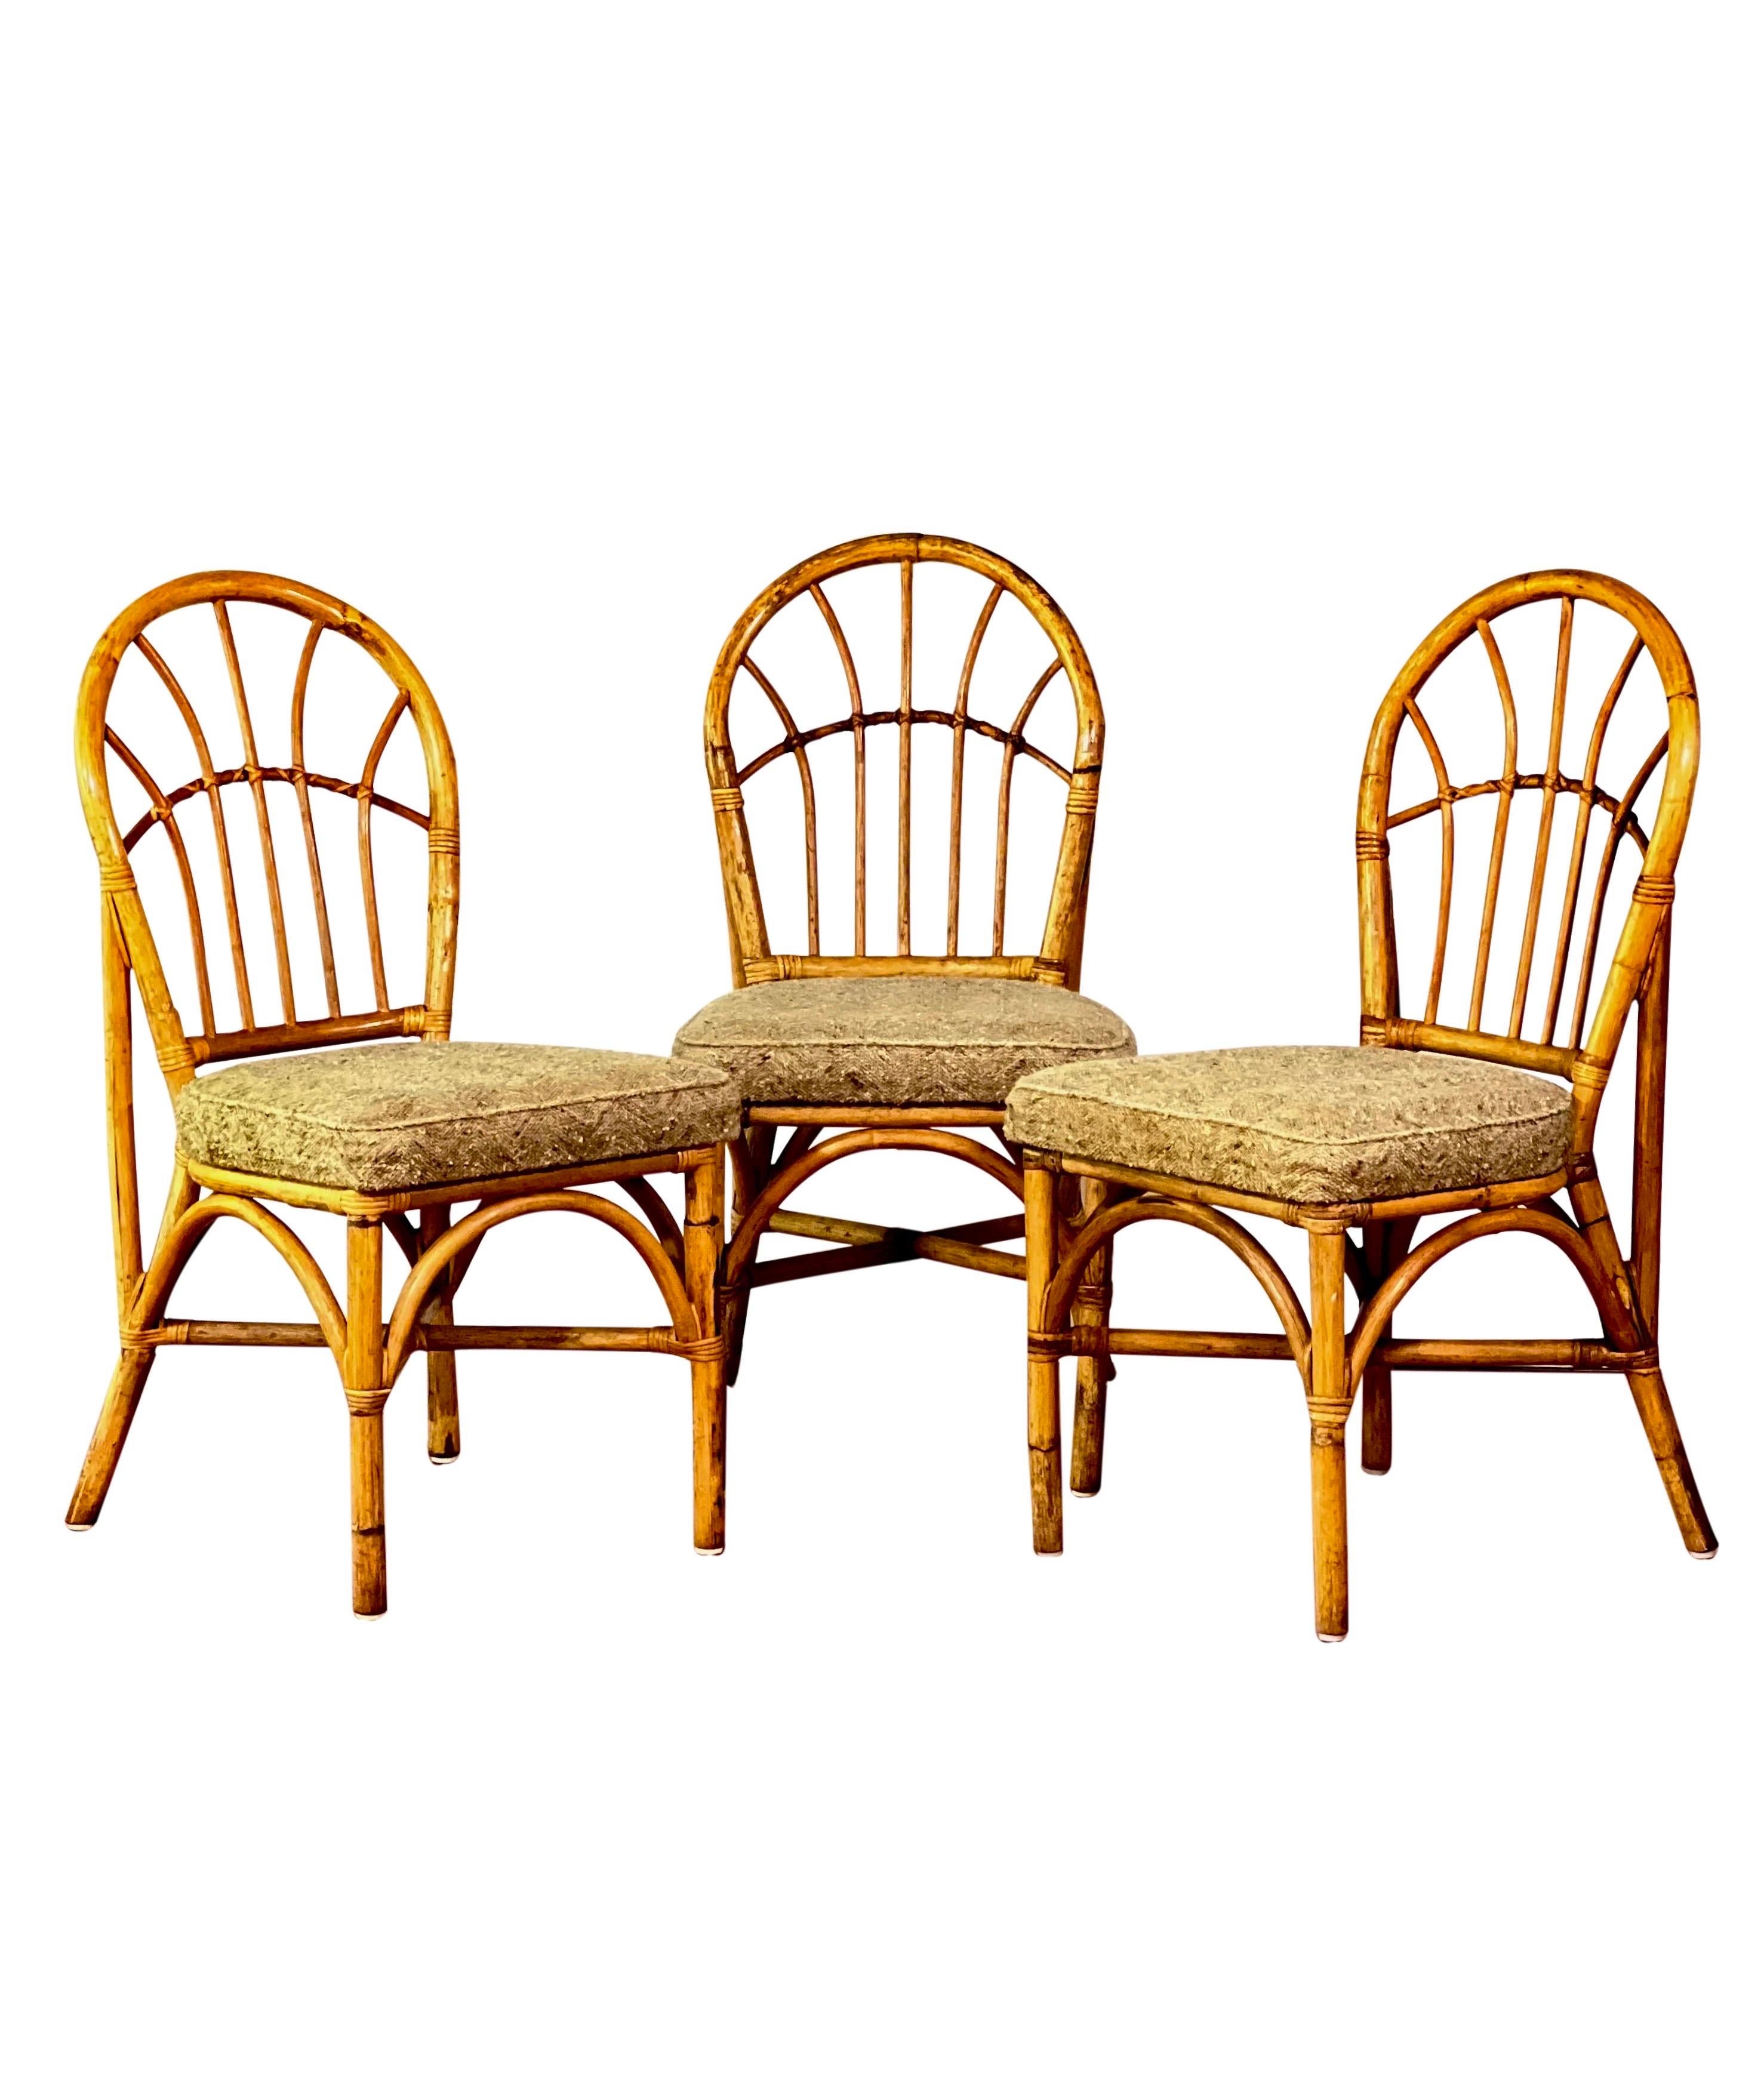 Ensemble de 4 chaises de salle à manger vintage en bambou rembourrées, années 1960.

Les chaises sont revêtues d'une laine texturée à chevrons dans une couleur avoine neutre. Les coussins sont fixés au cadre et sont en bon état, sans déchirures,